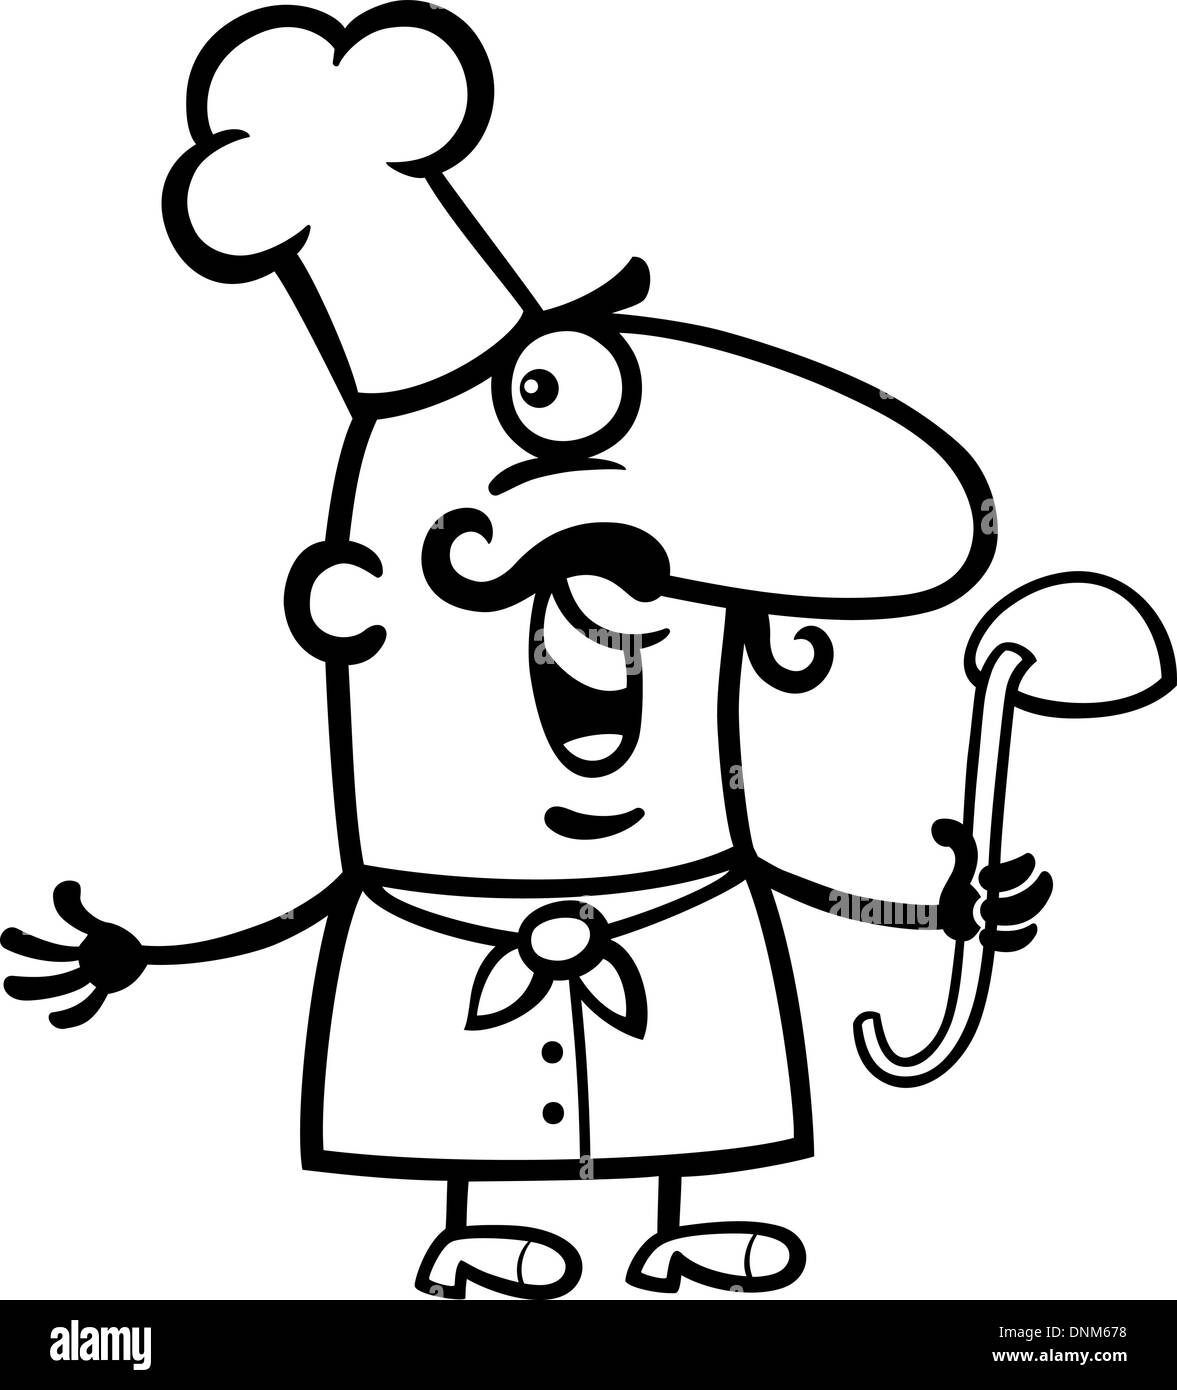 Cartoon noir et blanc Illustration de l'homme drôle ou Chef cuisinier pour l'occupation Profession Coloring Book Illustration de Vecteur